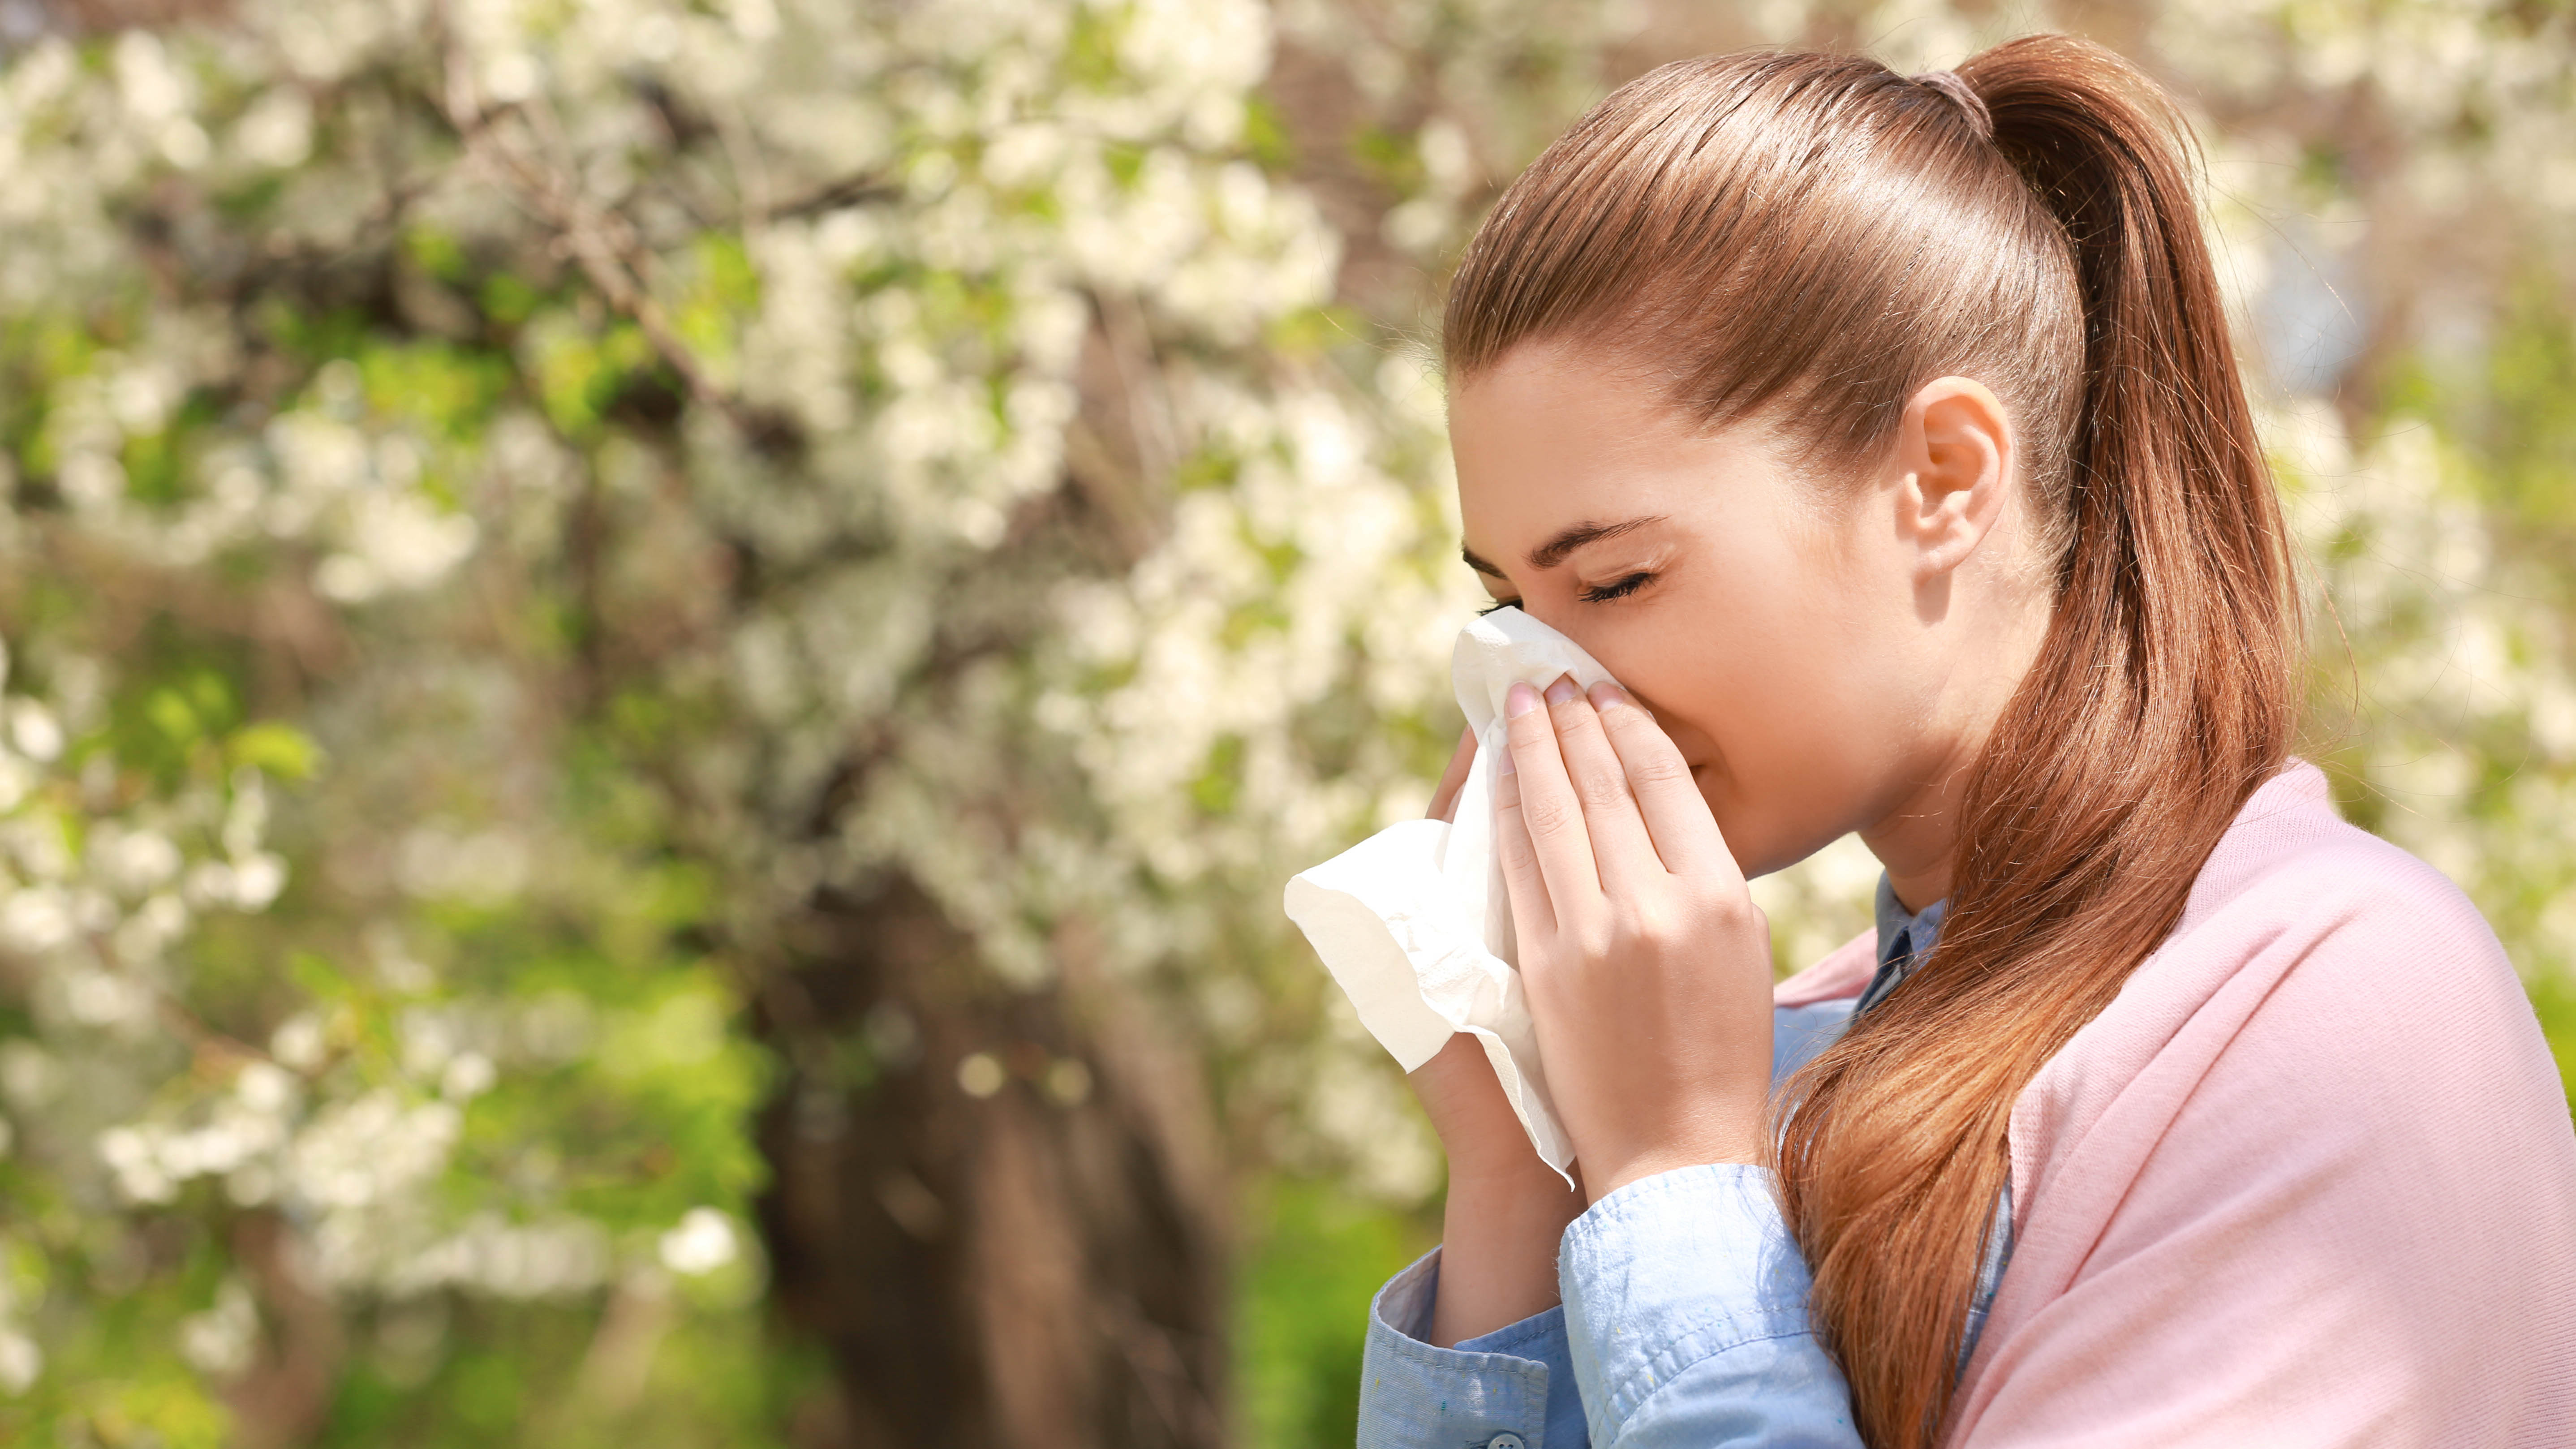 9 ways to fight allergy season